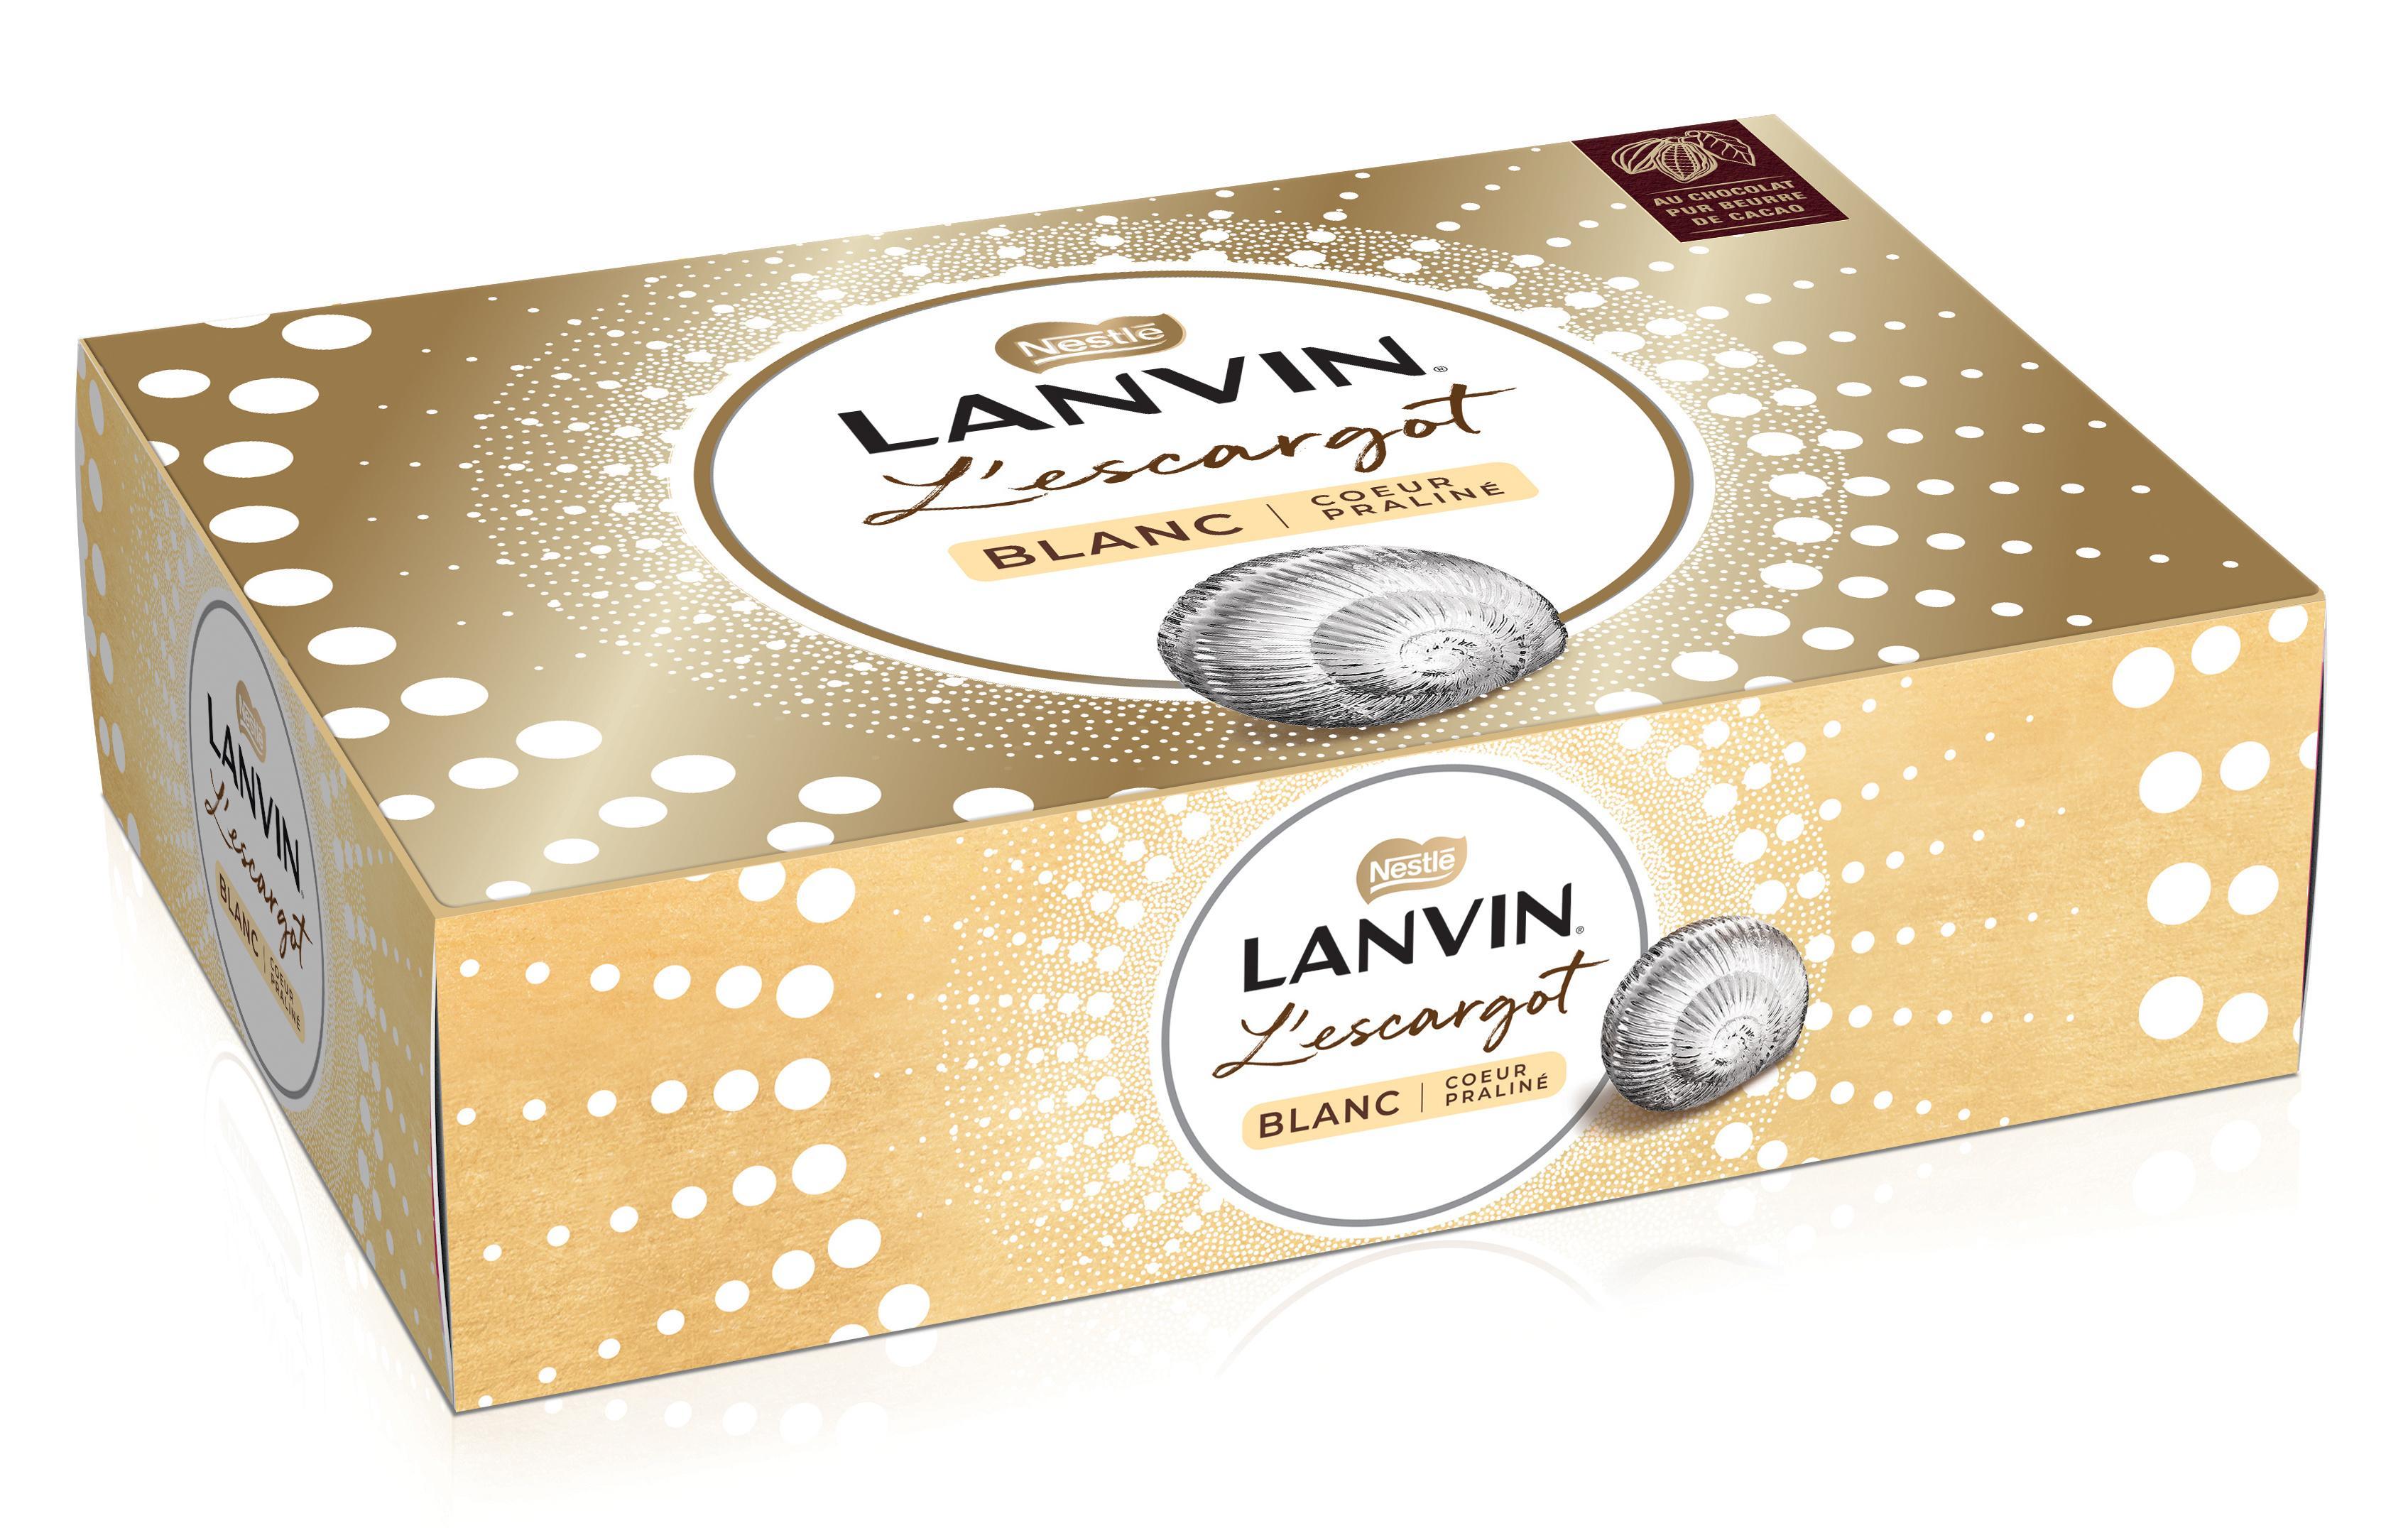 L'escargot chocolat blanc LANVIN, 164g - Super U, Hyper U, U